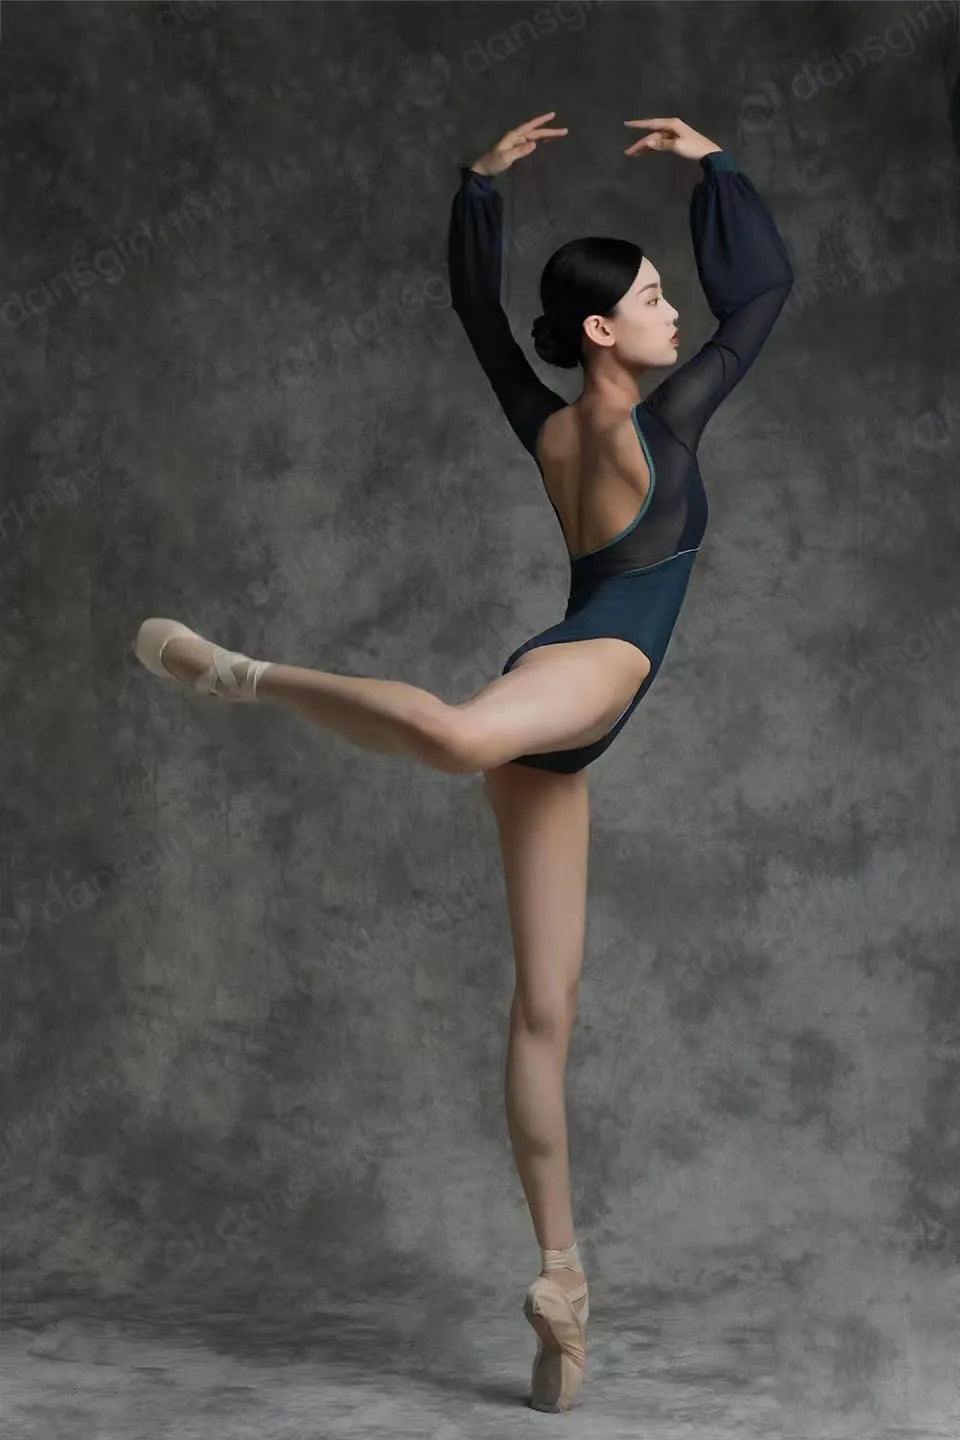 ballet dancer wearing a black leotard doing an arabesque pose